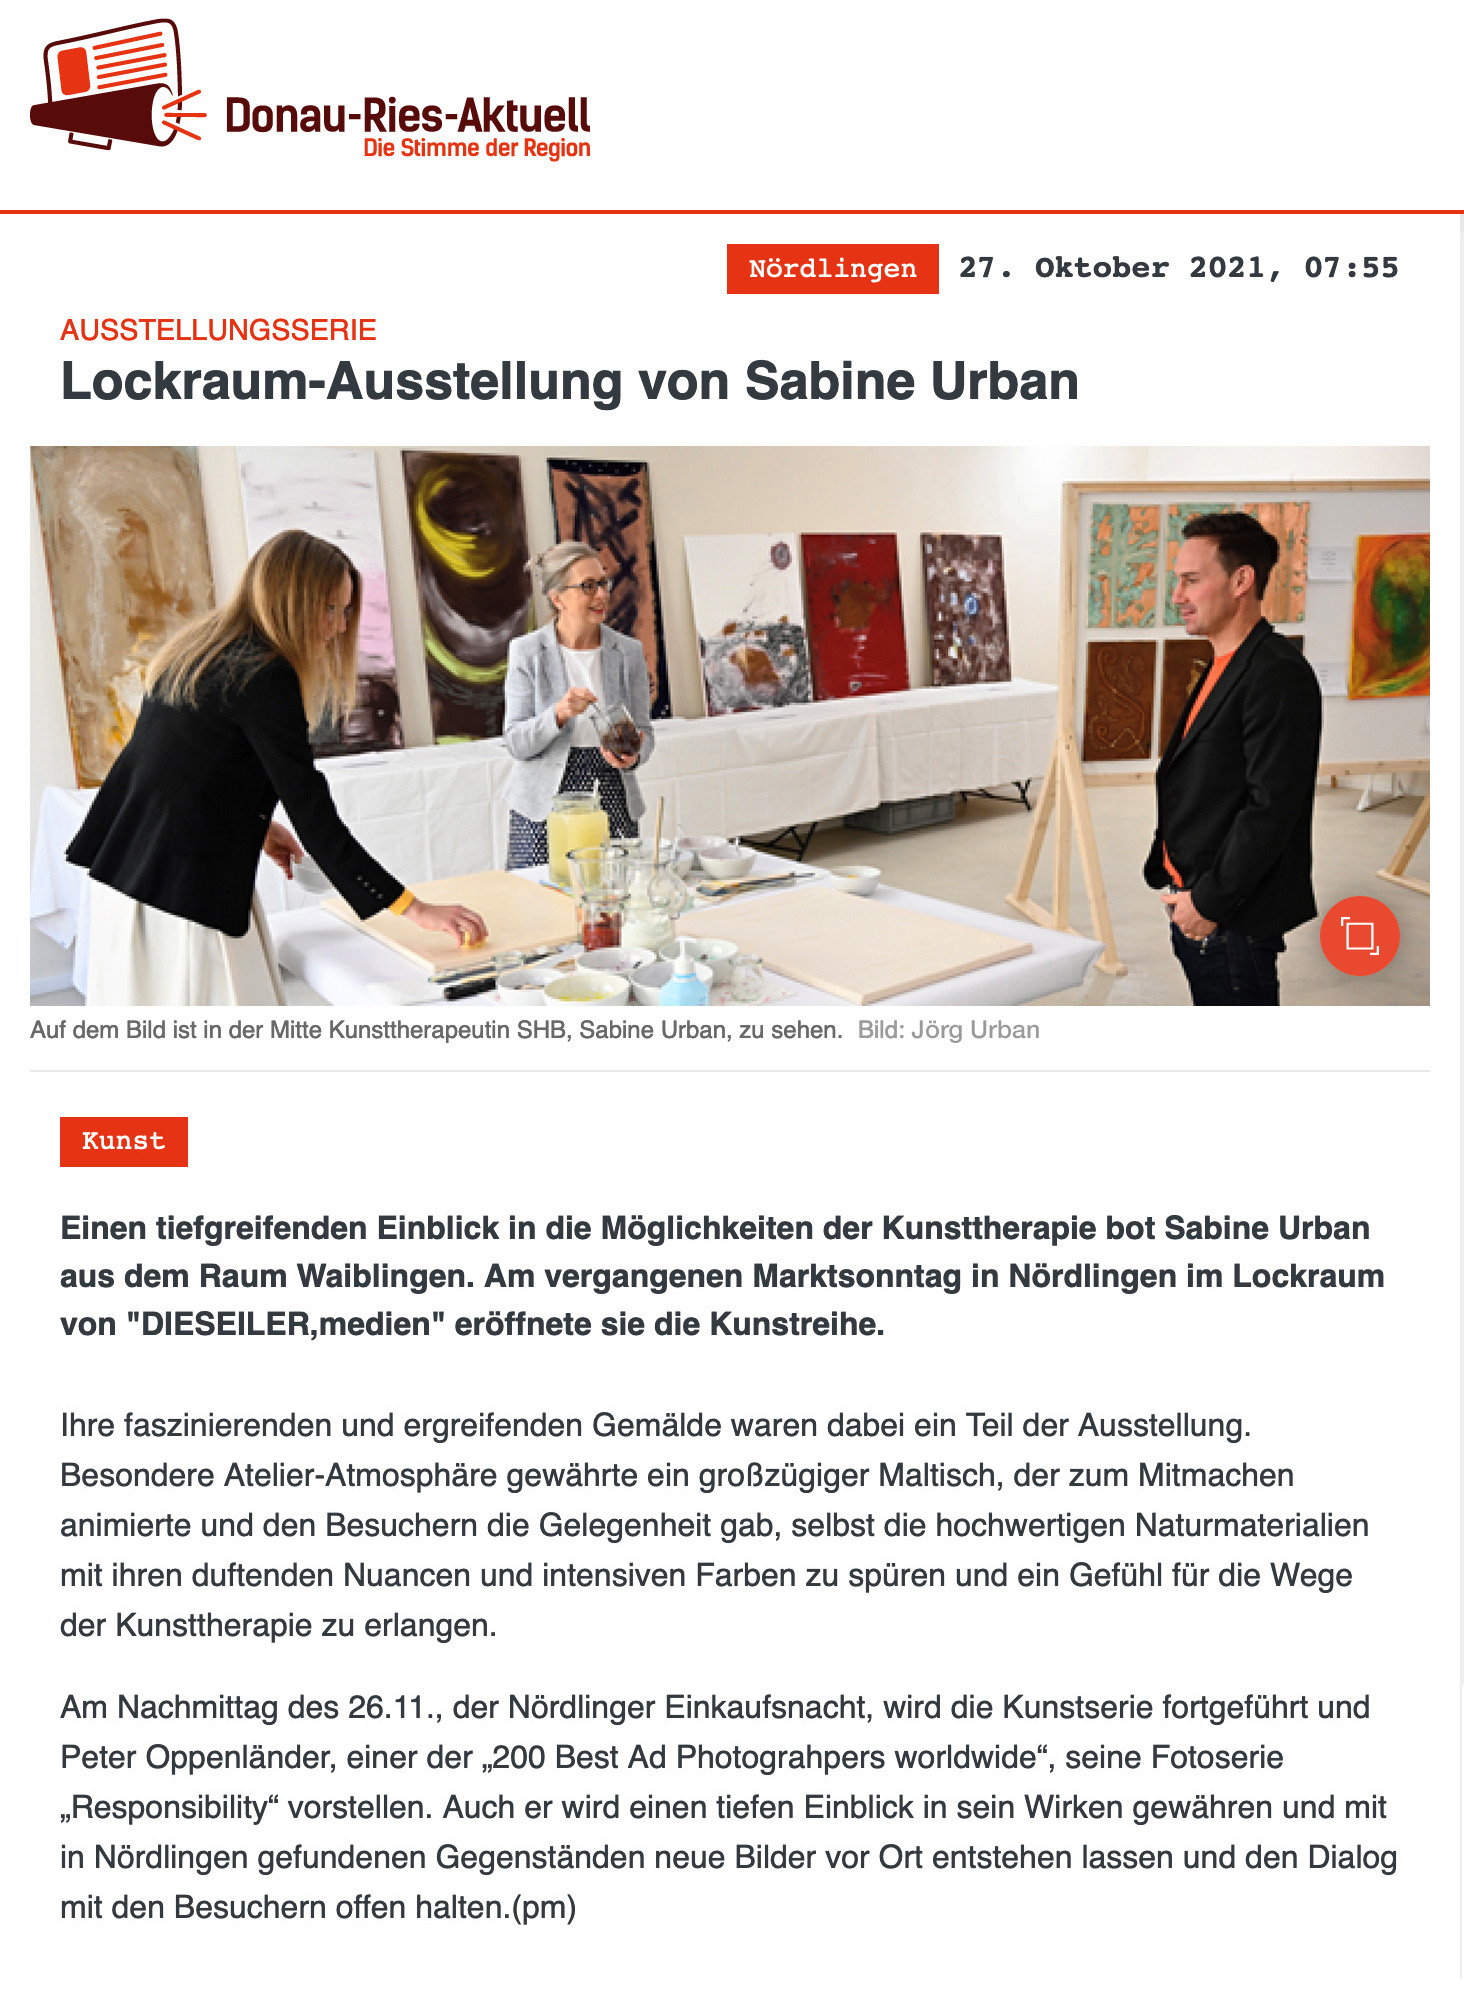 LOCKRAUM, Besondere Ausstellungen in Nördlingen